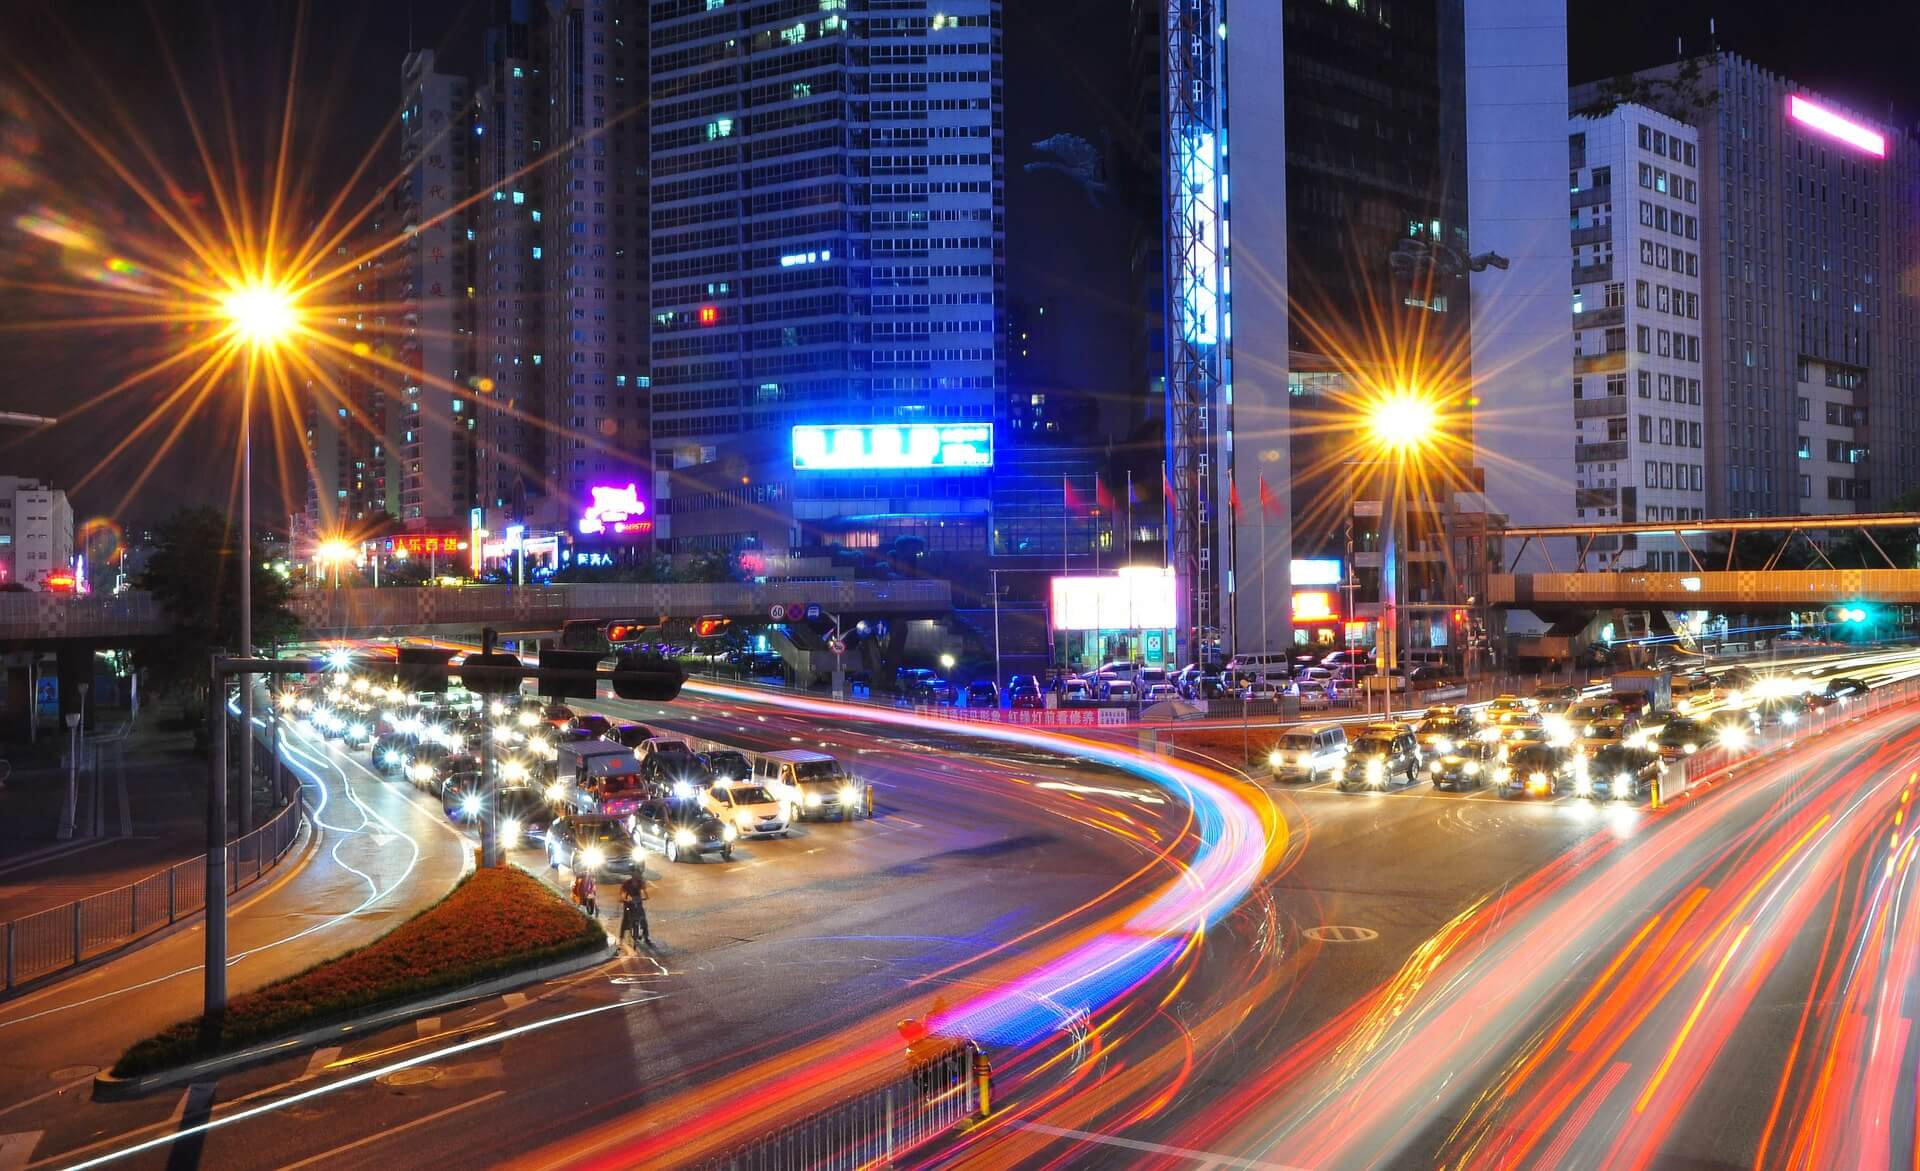 Shenzhen lights